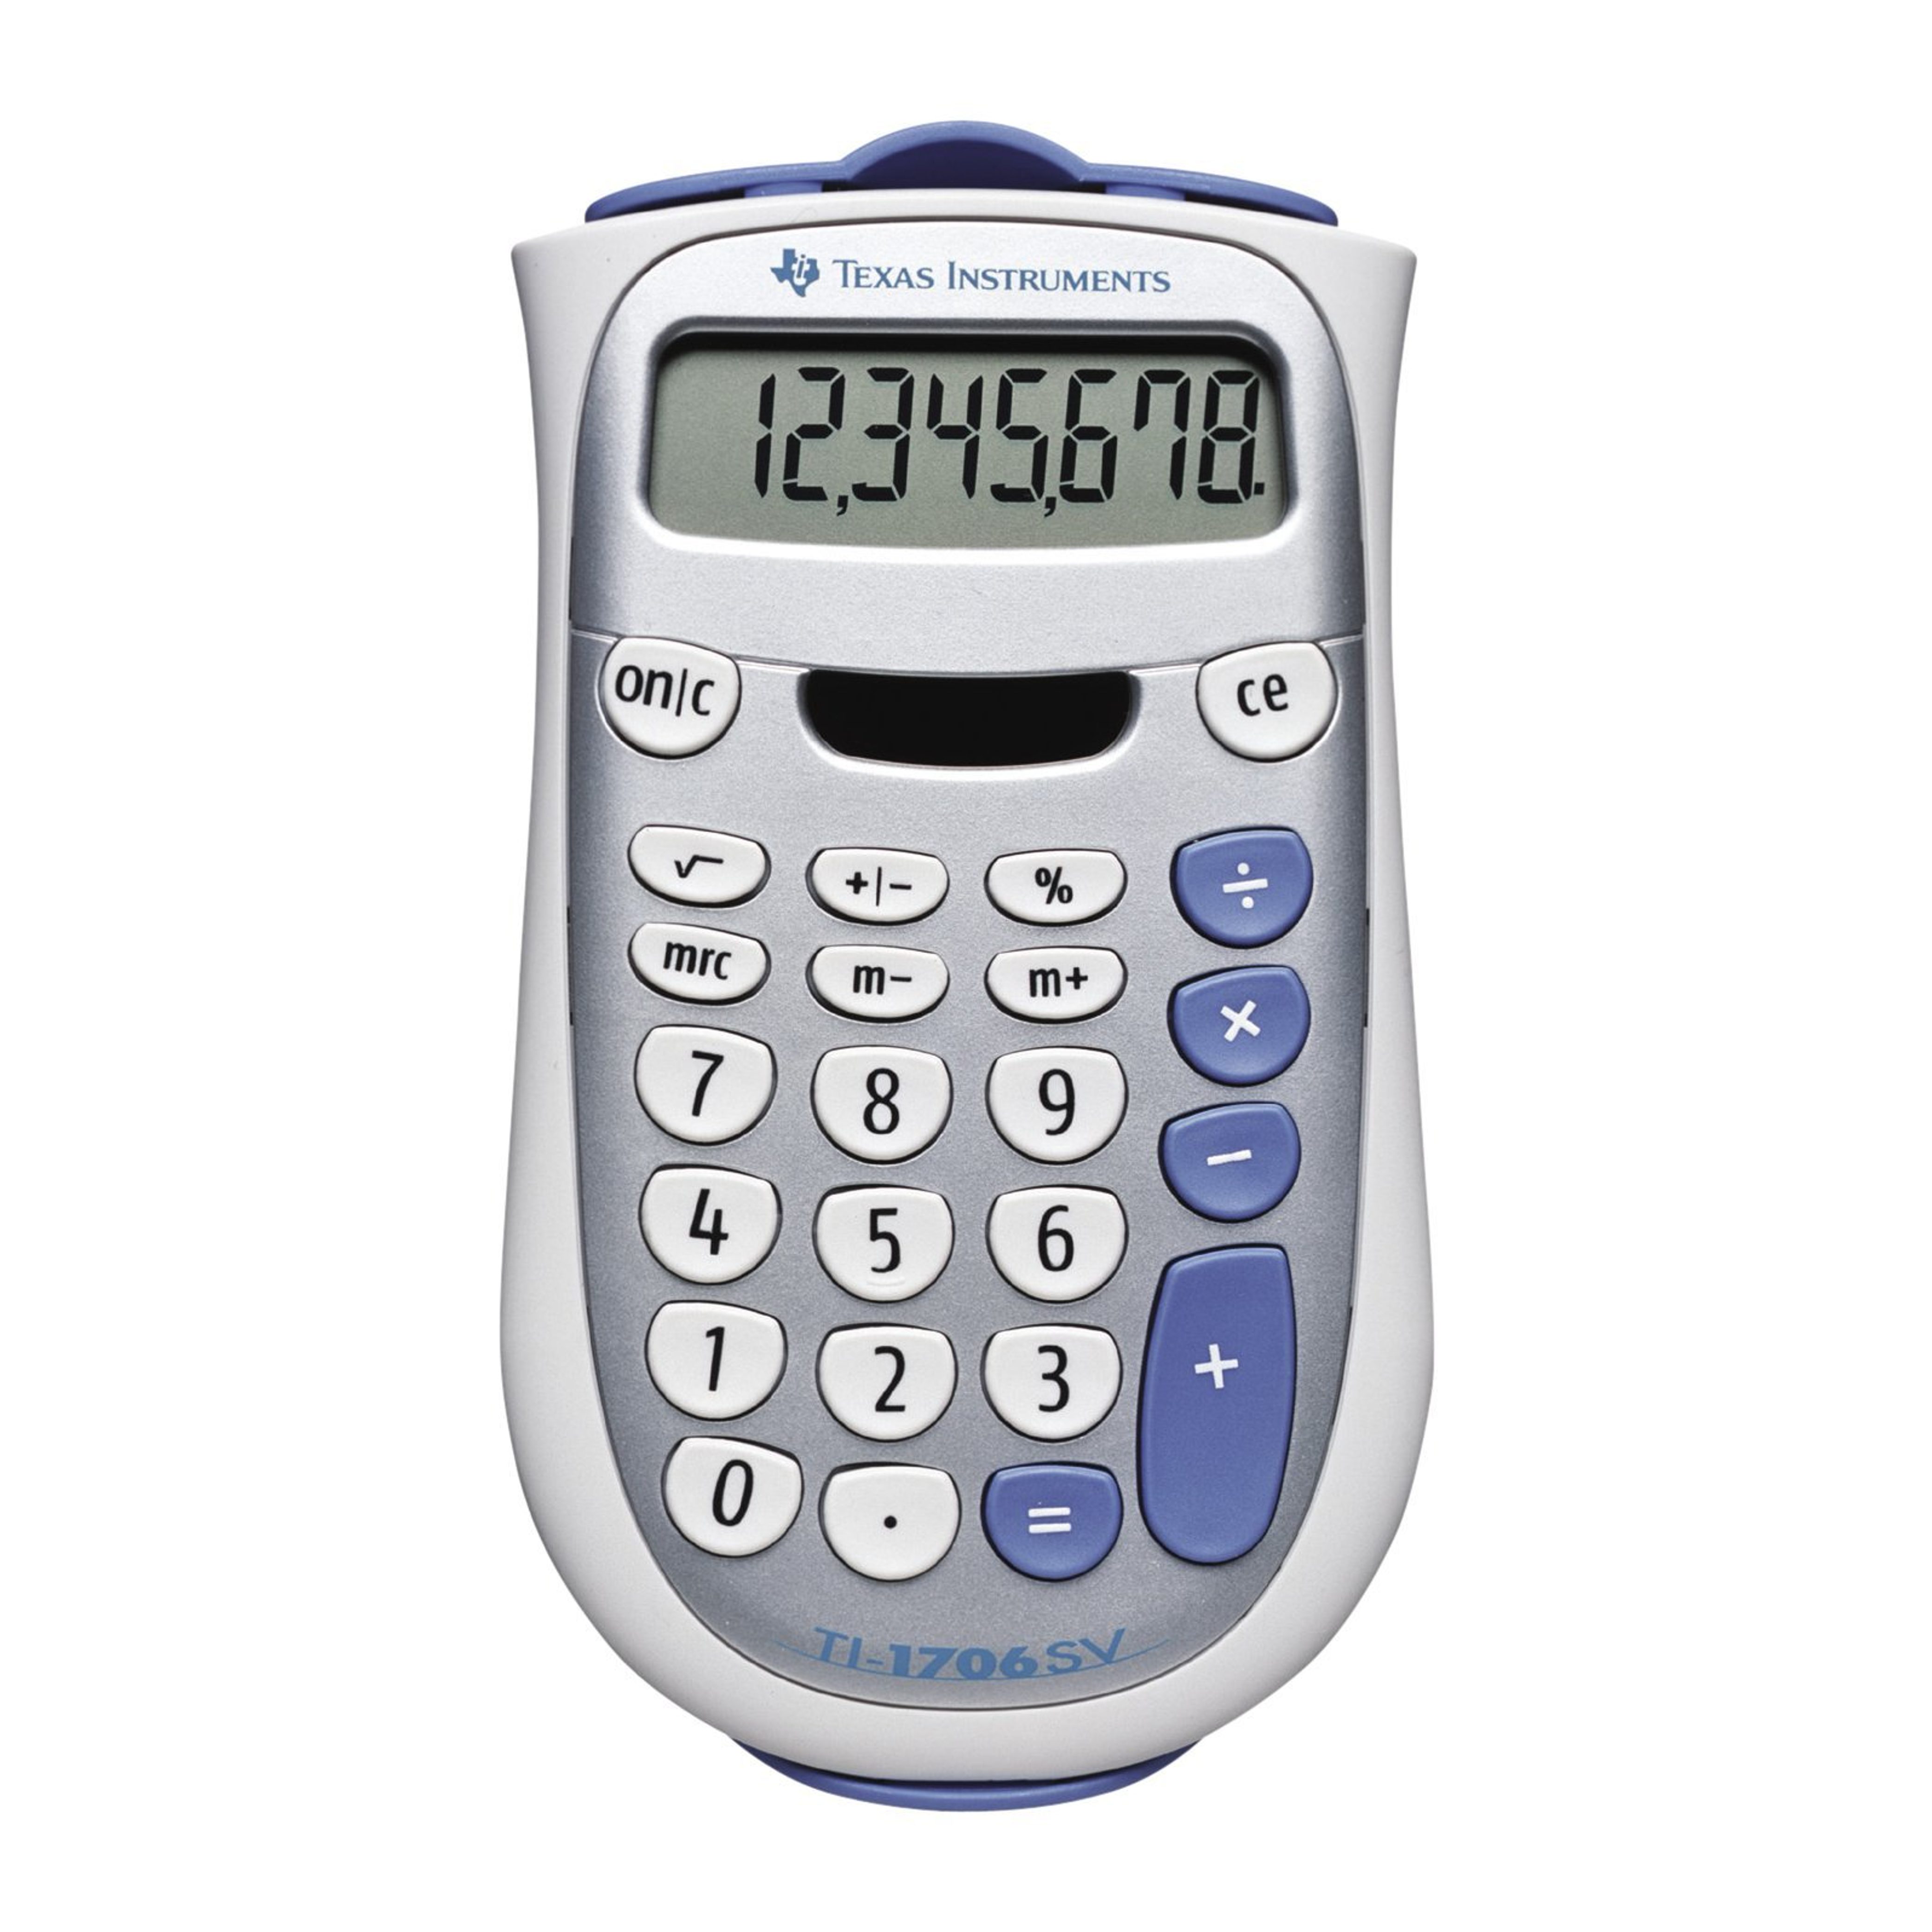 Texas Instruments Taschenrechner TI-1706 SV, 8-stellig, 1 Speicher, Solar/ Batterie